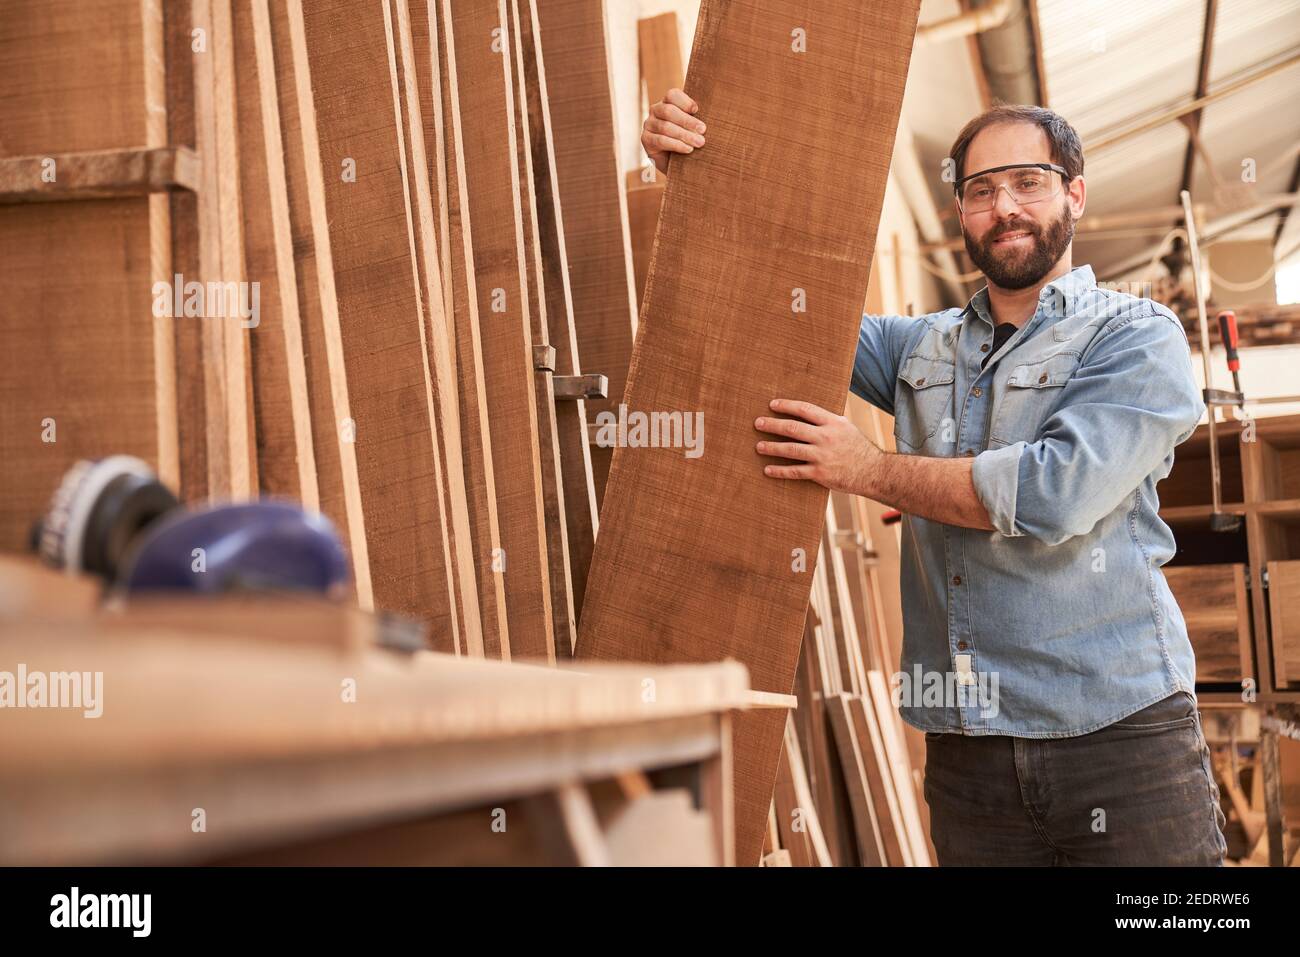 Falegname o falegname nel magazzino legno con un pezzo per la costruzione di mobili Foto Stock